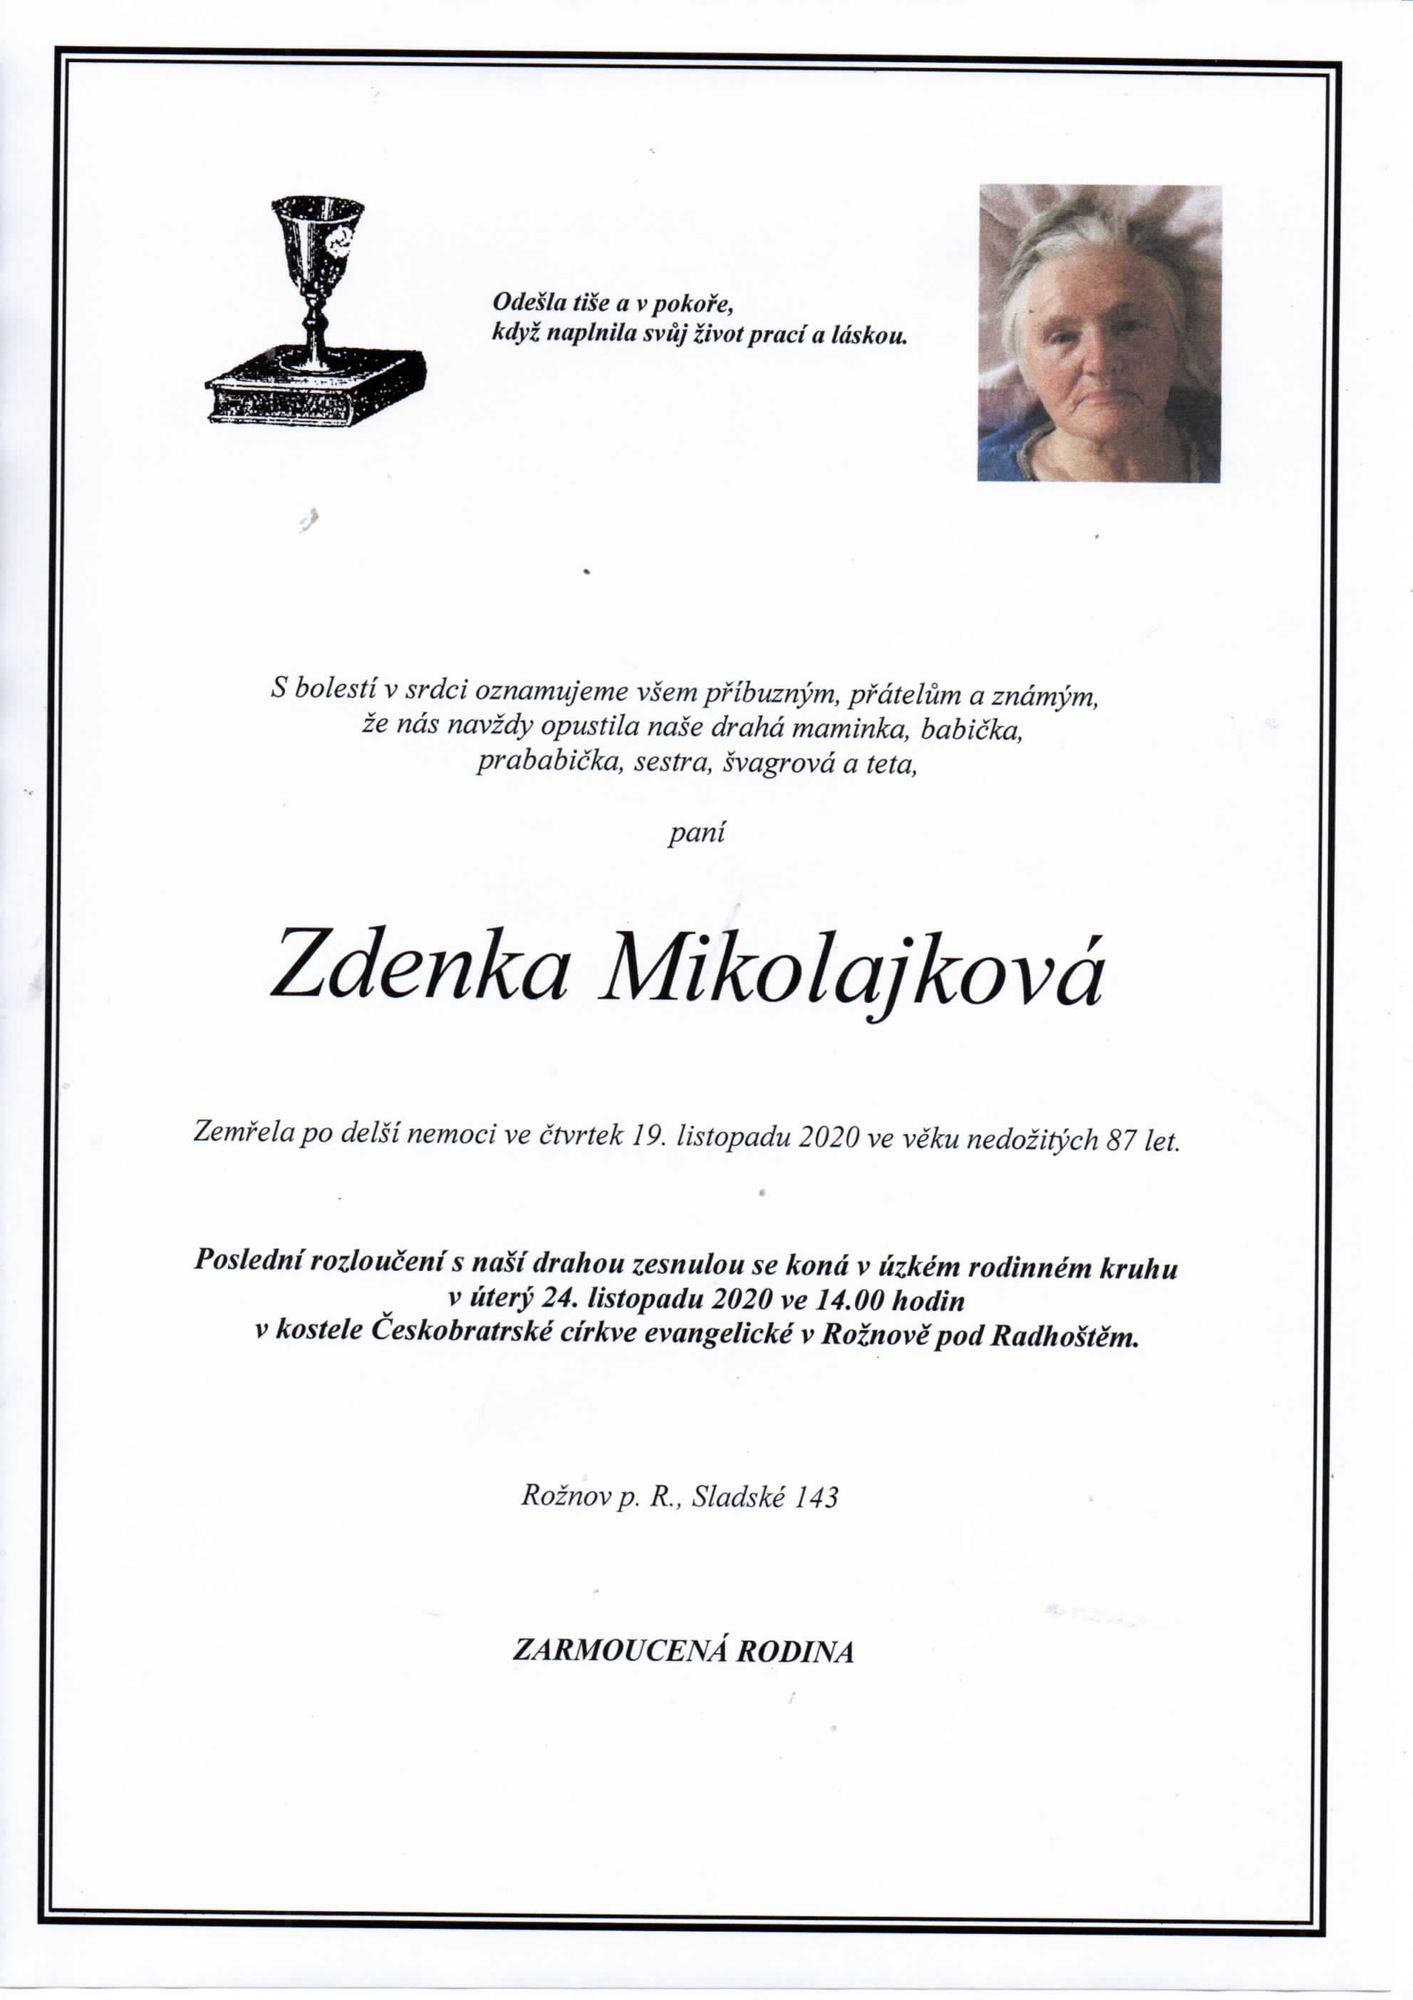 Zdenka Mikolajková